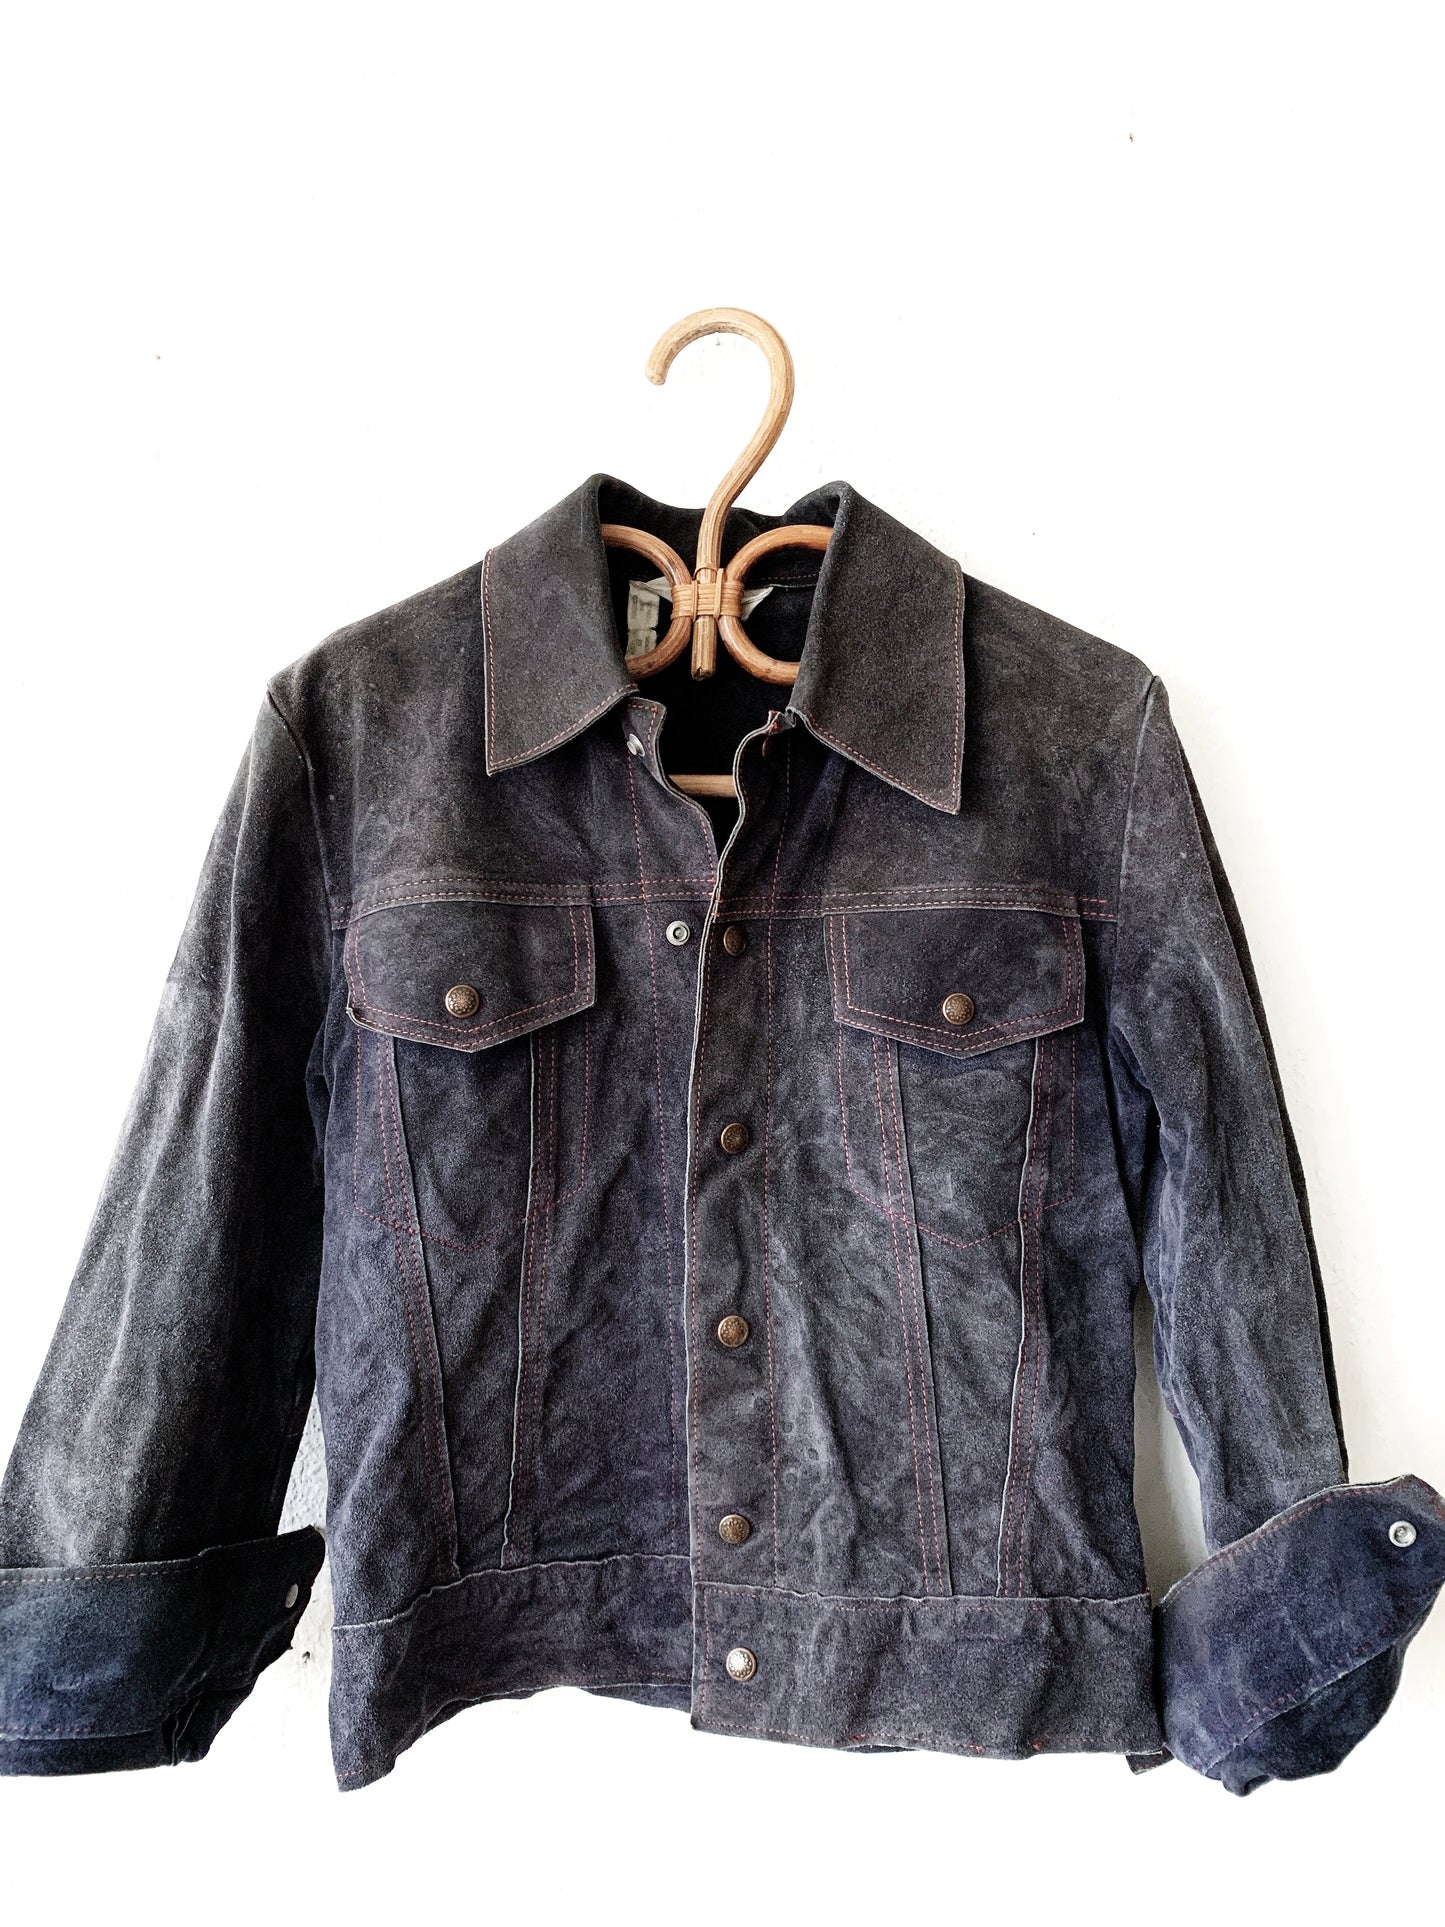 Vintage Montgomery Ward Suede Jacket